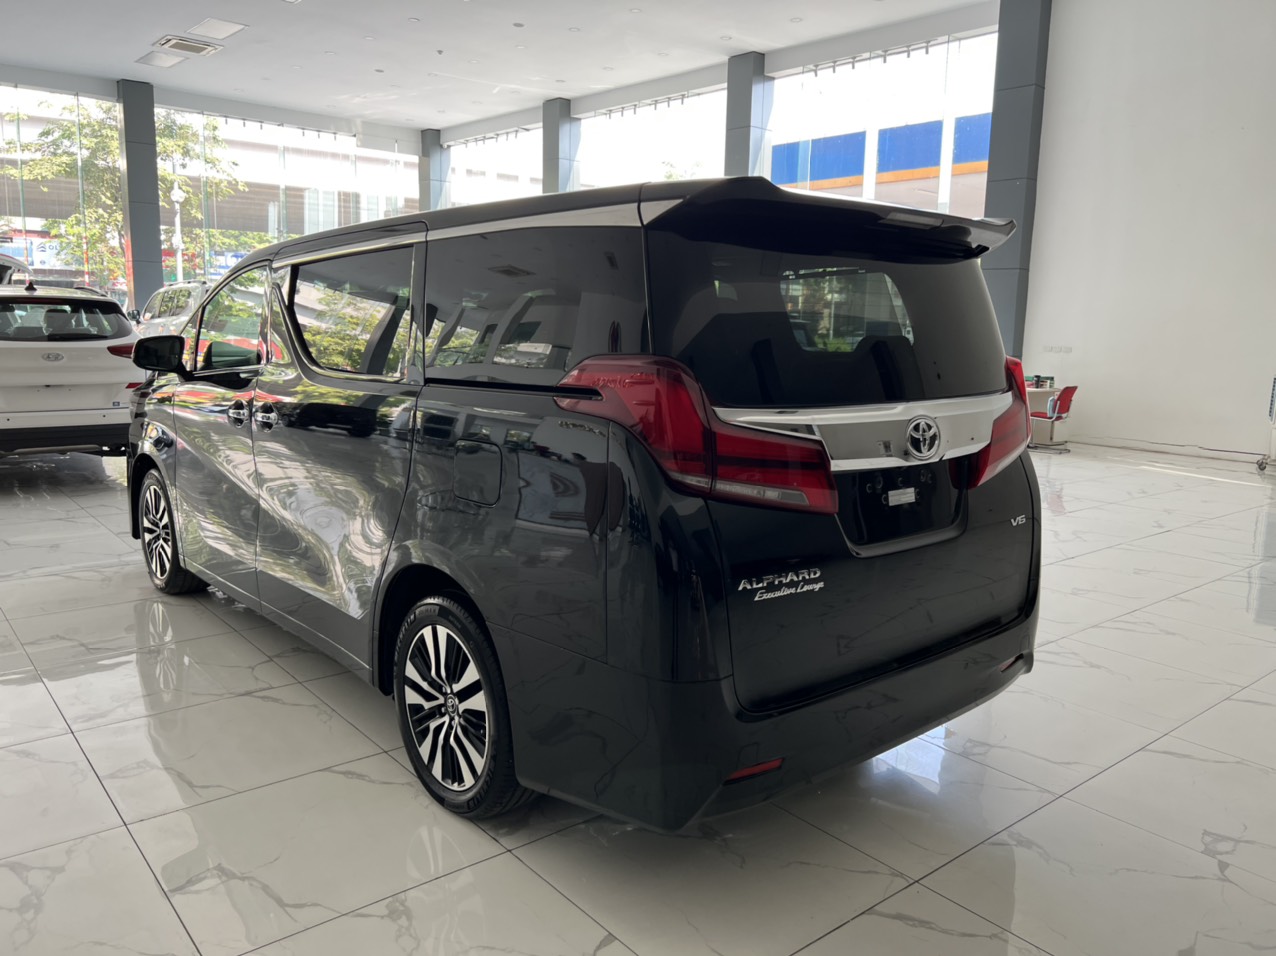 Bán Toyota Alphard Executive Lounge sản xuất 2018, màu đen, xe nhập khẩu sơn zin lốp theo xe -5